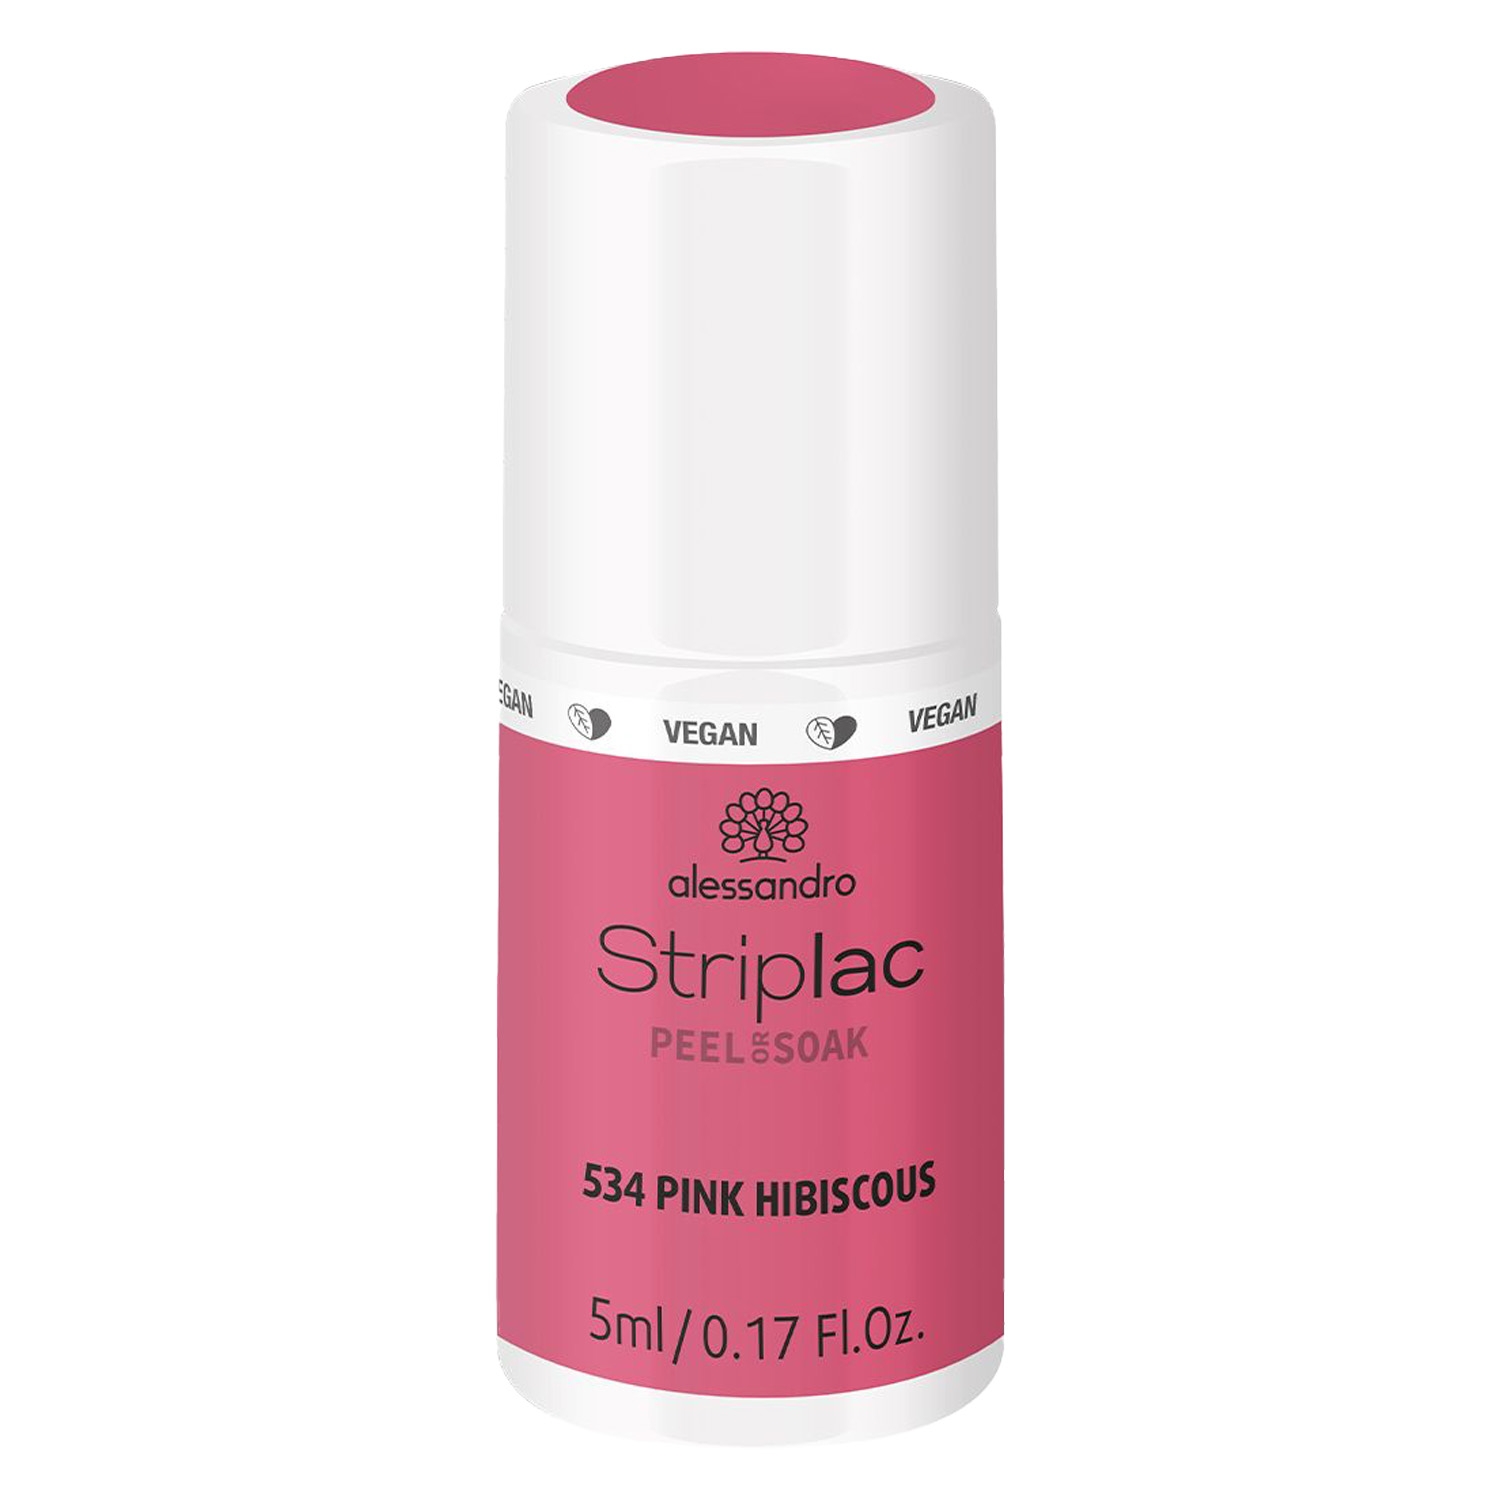 Produktbild von Striplac Peel or Soak - Pink Hibiscous